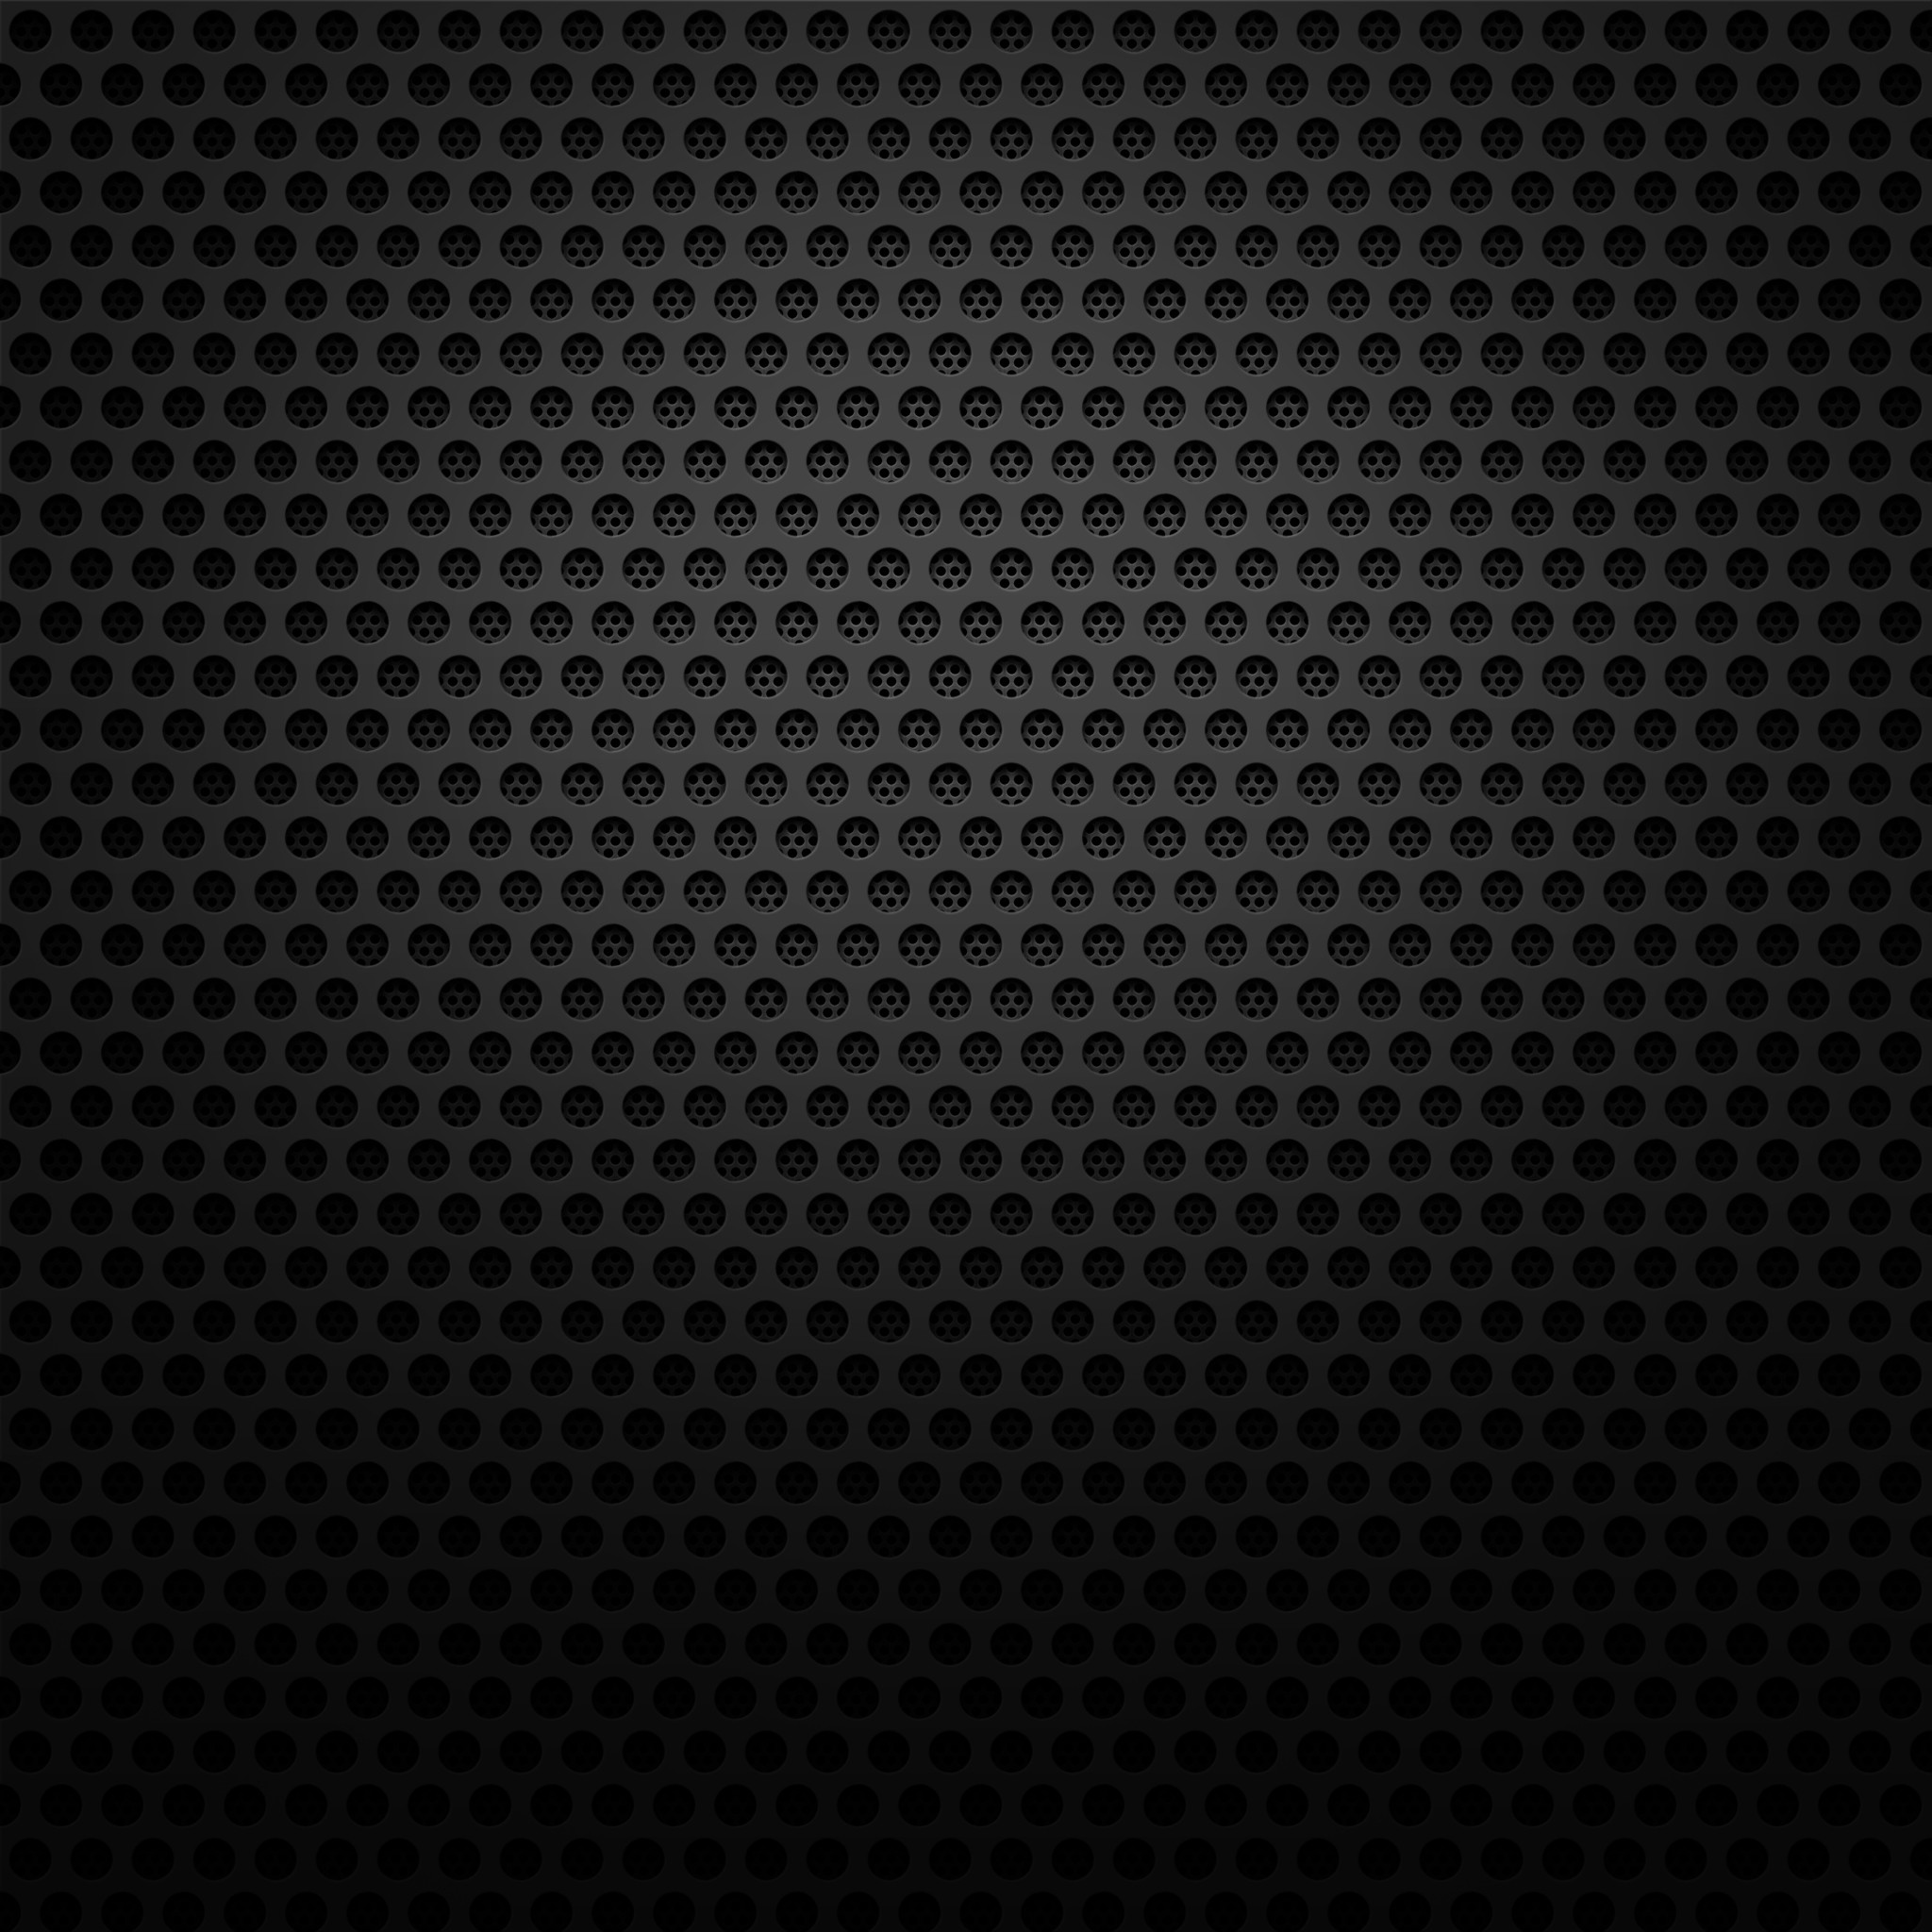 2048x2048 19617 19: Black Hole iPad wallpaper